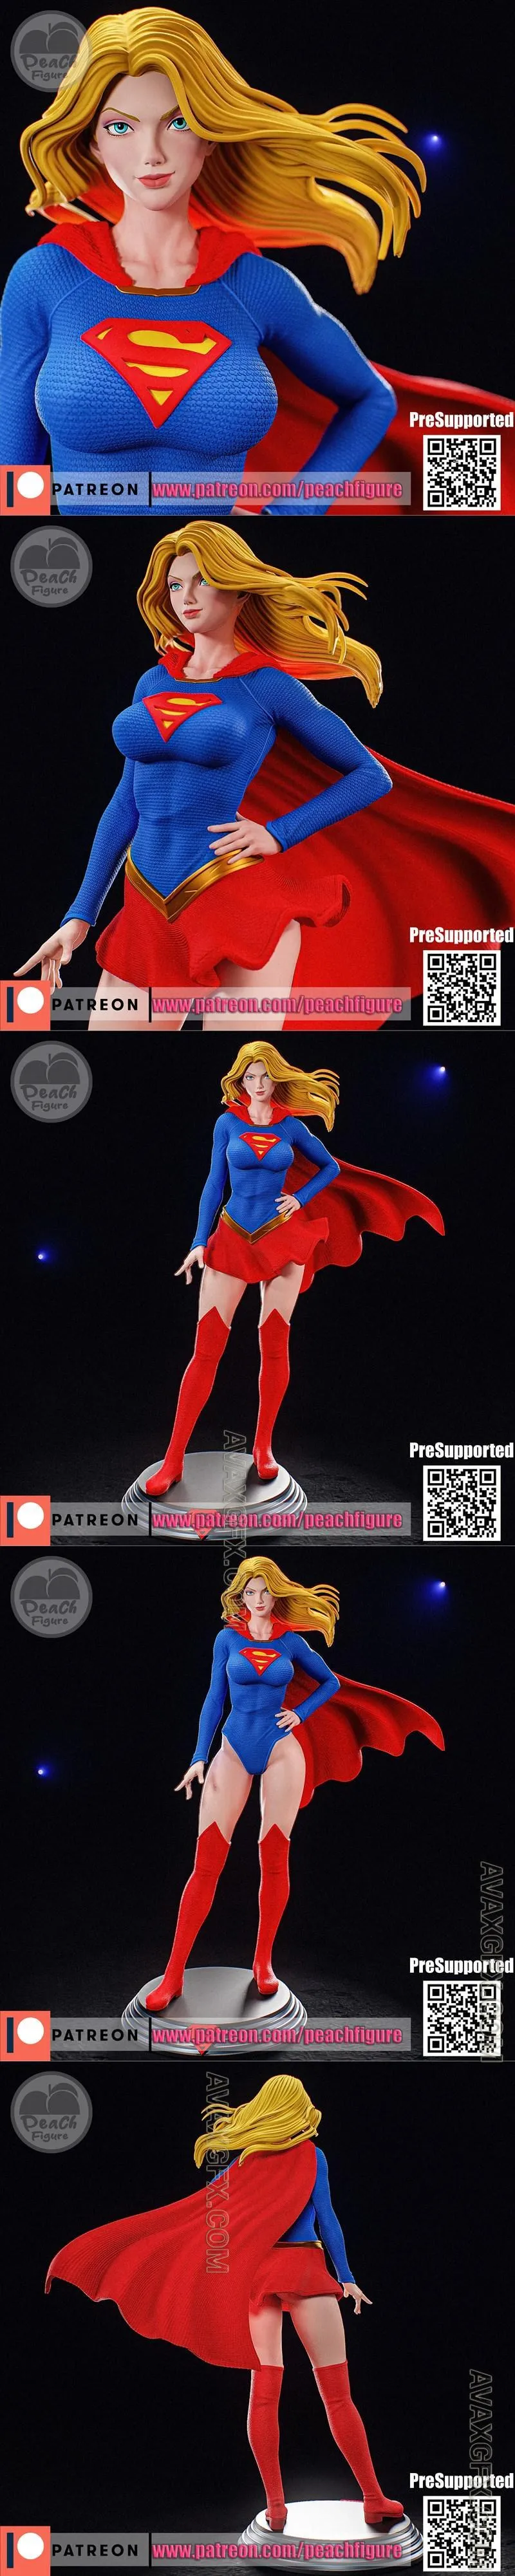 Peach Figure - Supergirl - STL 3D Model